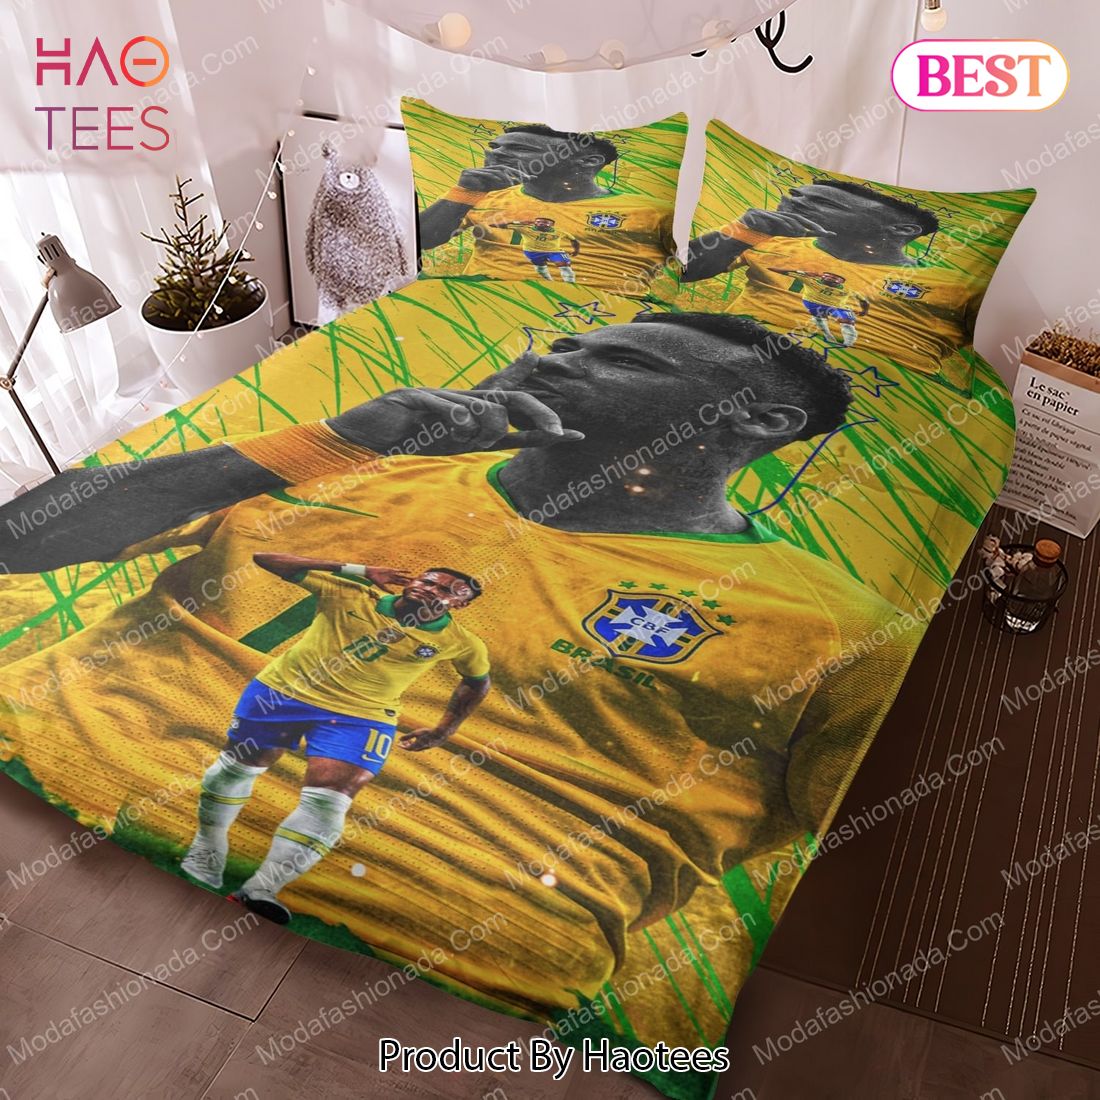 NEW Neymar Brazil Bedding Sets Bed Sets, Bedroom Sets, Comforter Sets, Duvet Cover, Bedspread